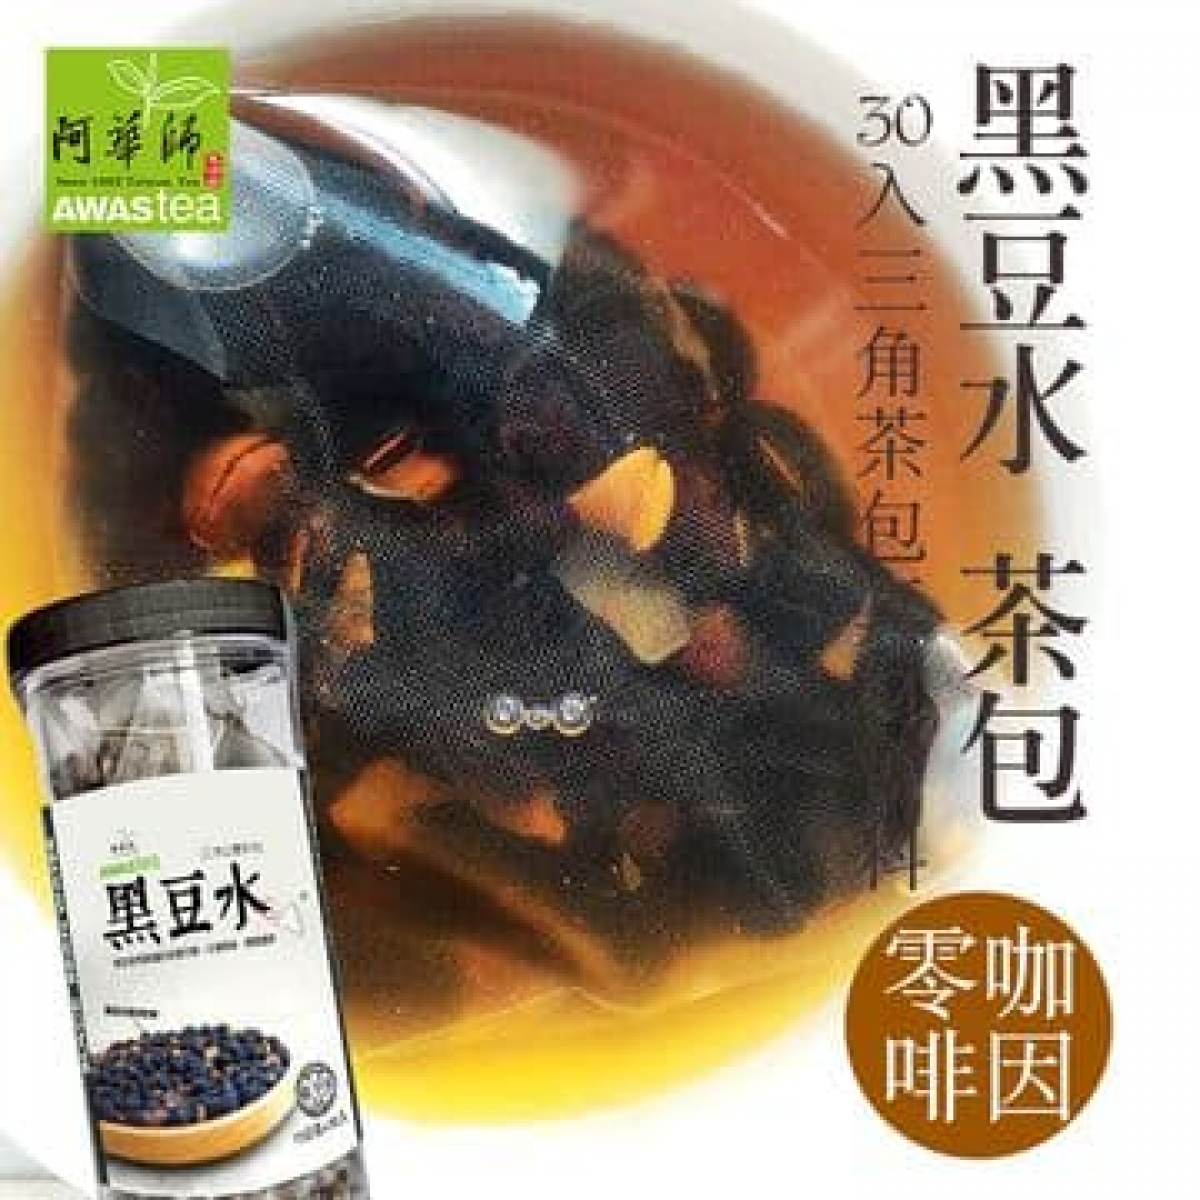 阿华师茶业-黑豆水-茶苞谷早茶系列15gx30入/罐